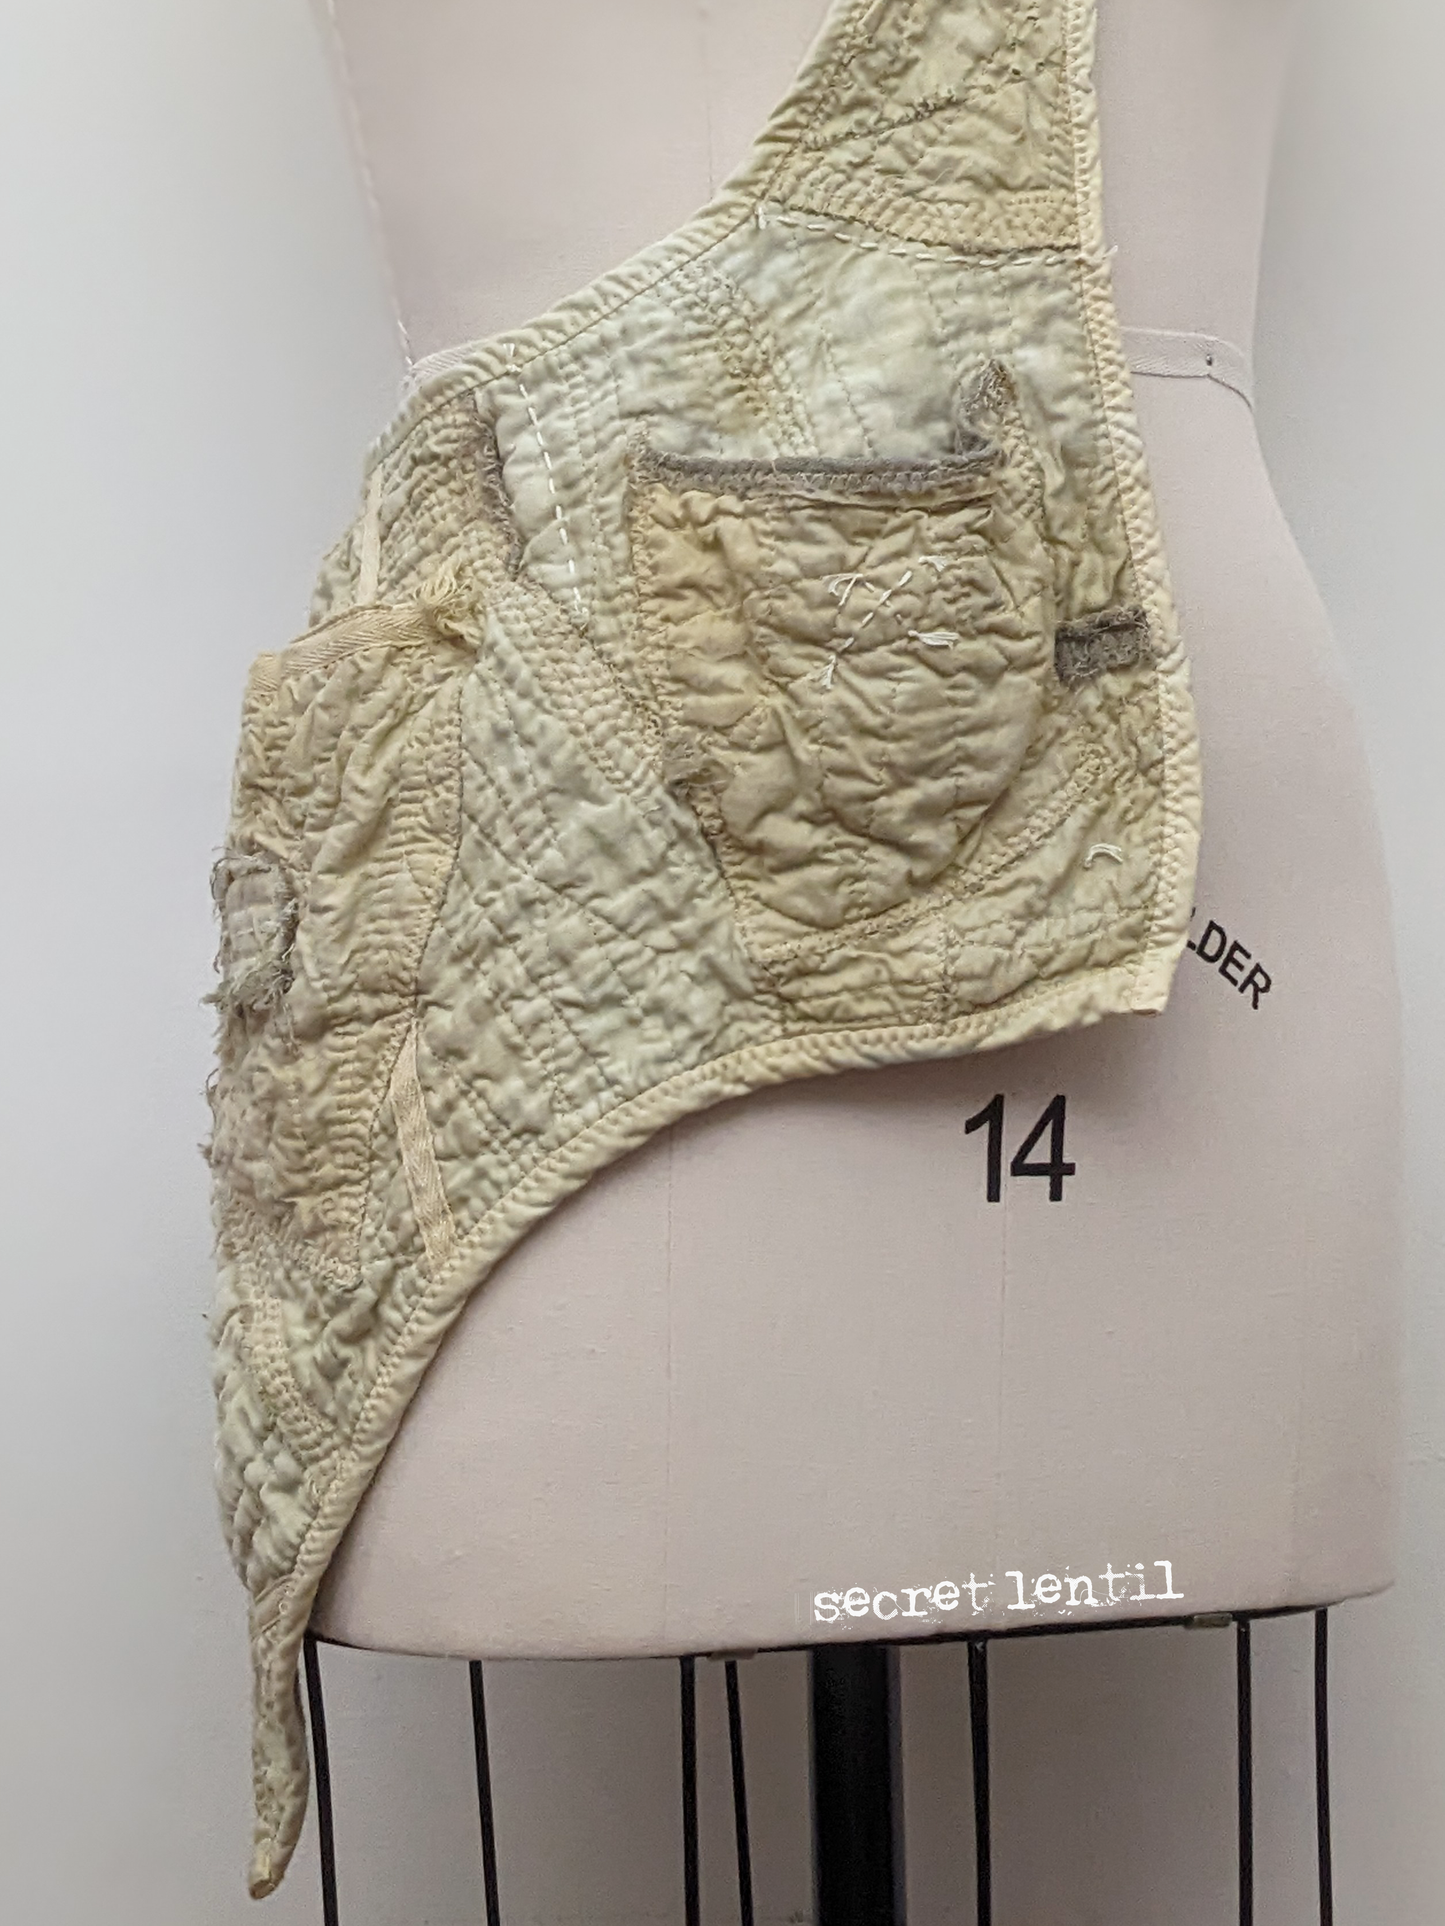 secret lentil artifacted sling apron, pocket detail